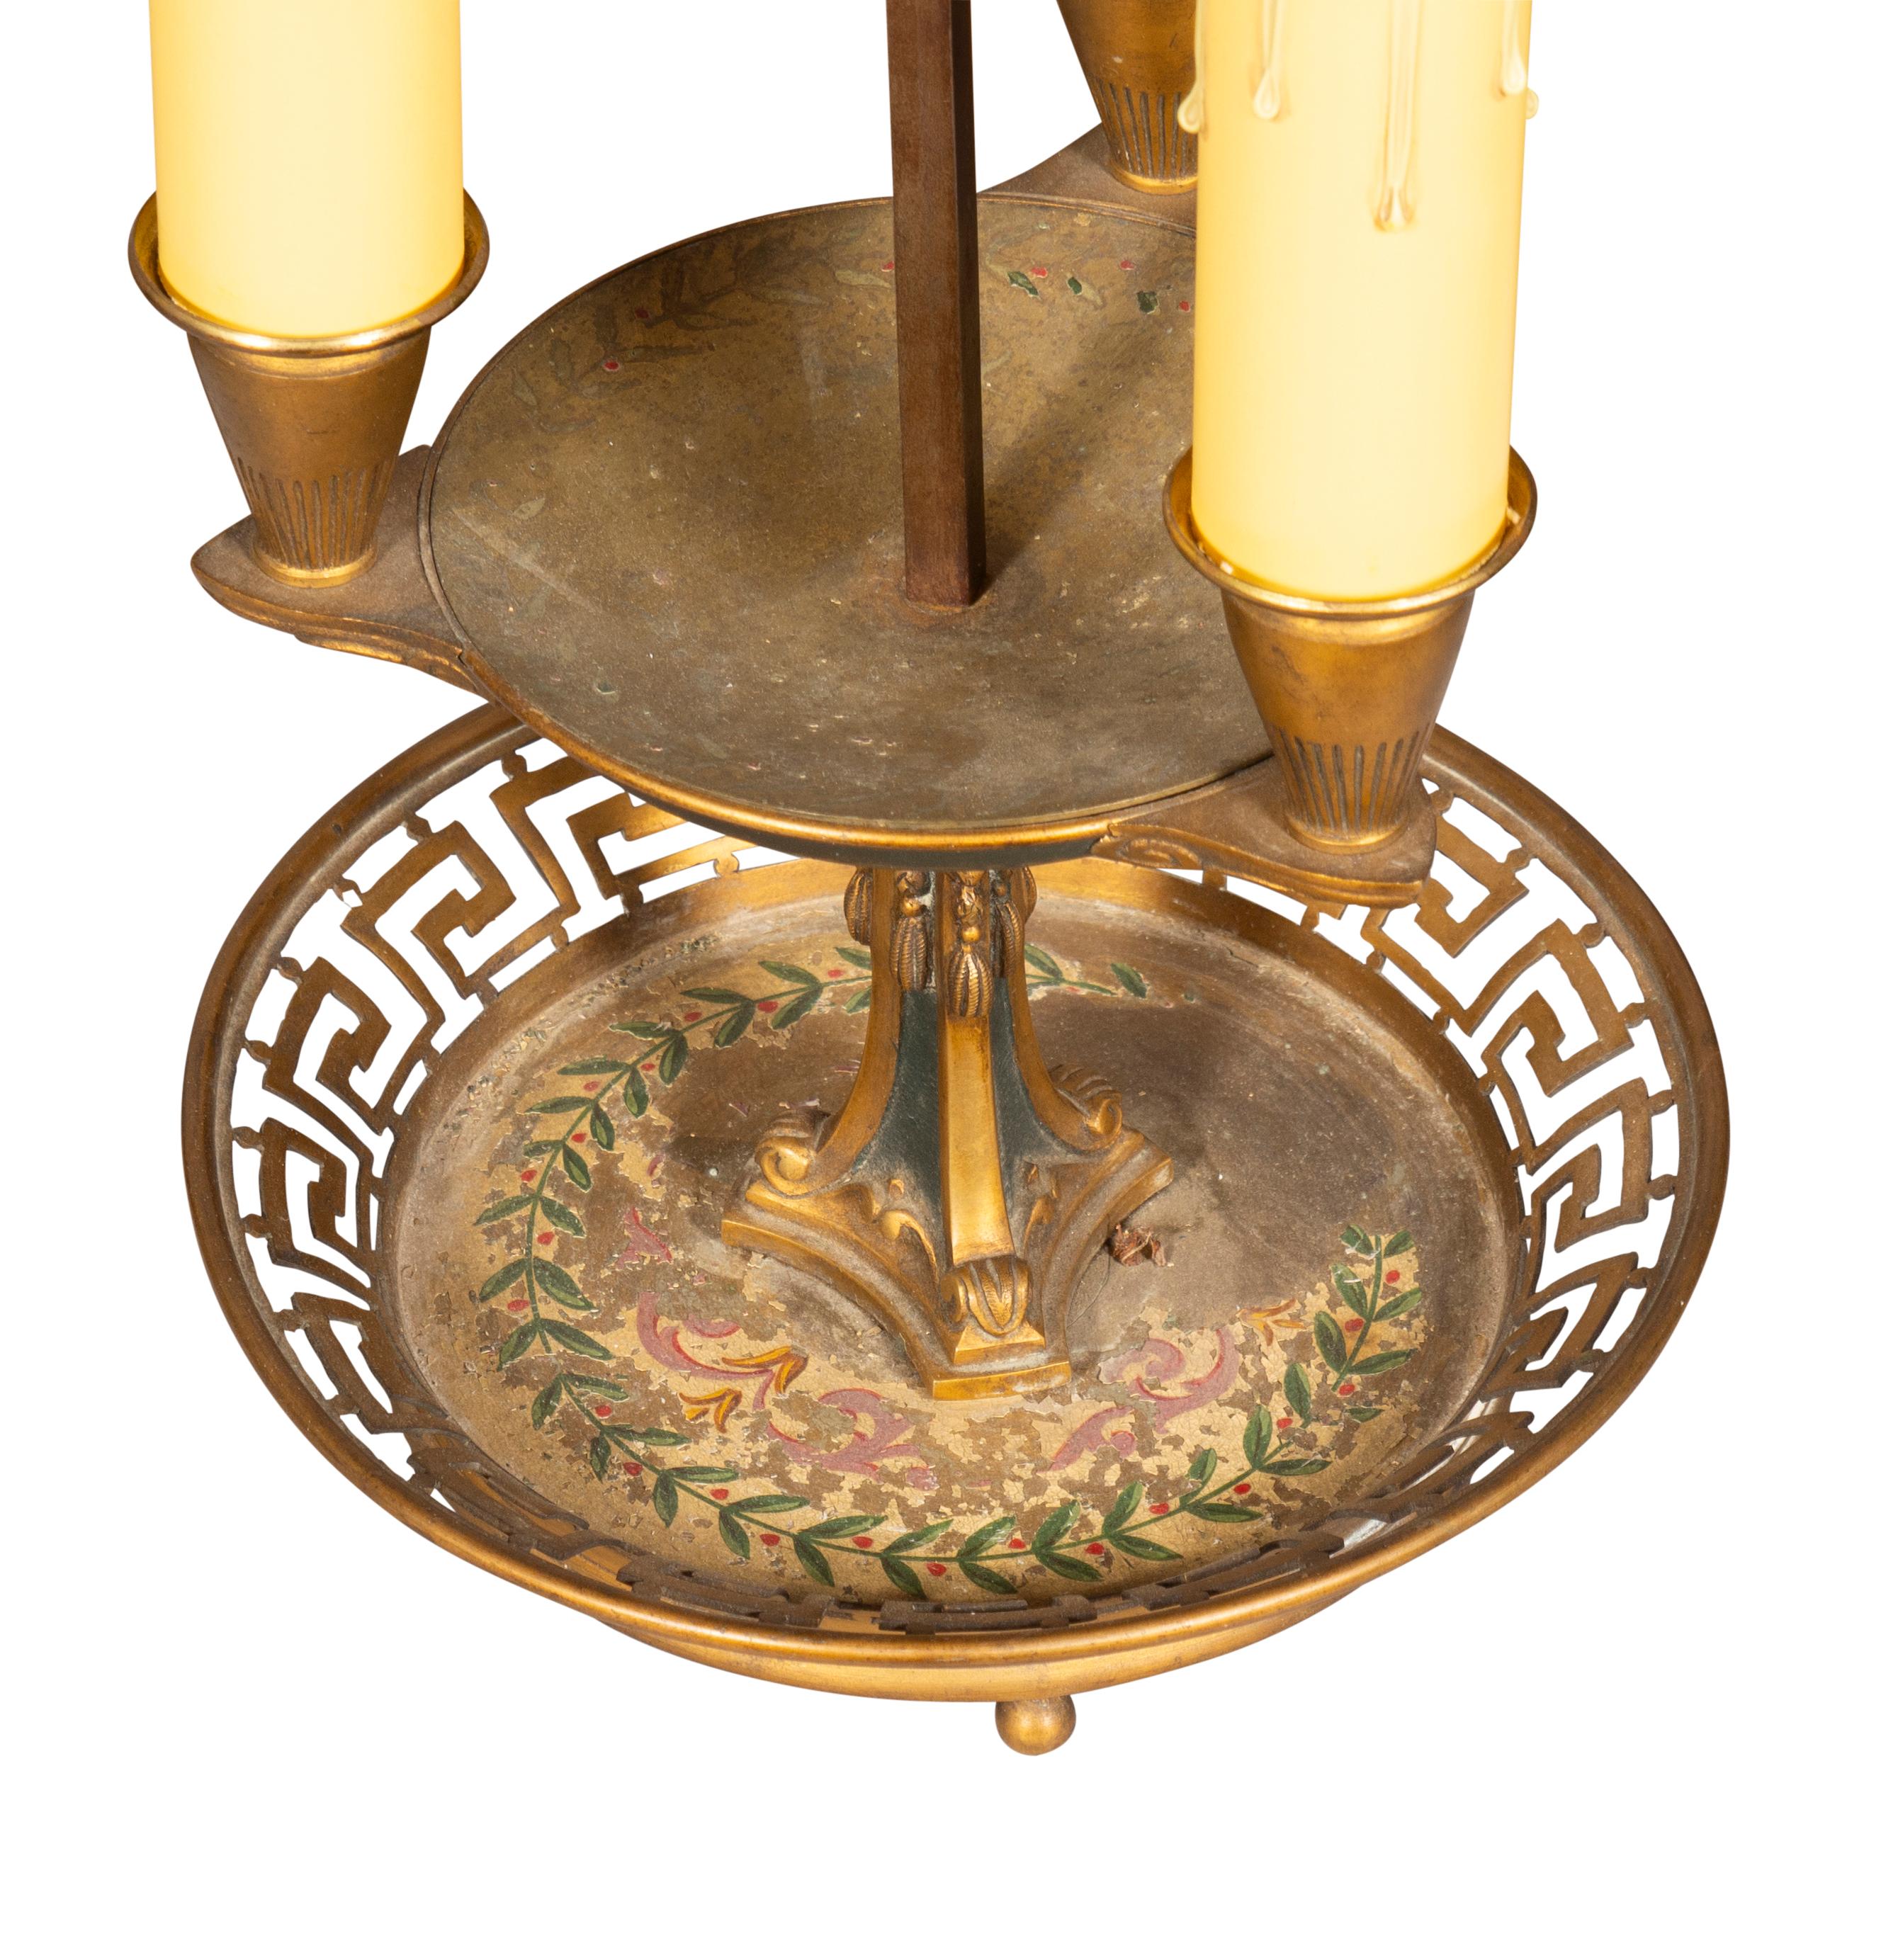 La paire est dotée d'un abat-jour réglable en métal peint et d'une base en bronze réticulée avec décoration intérieure peinte. Chacune d'entre elles est dotée de trois lumières.